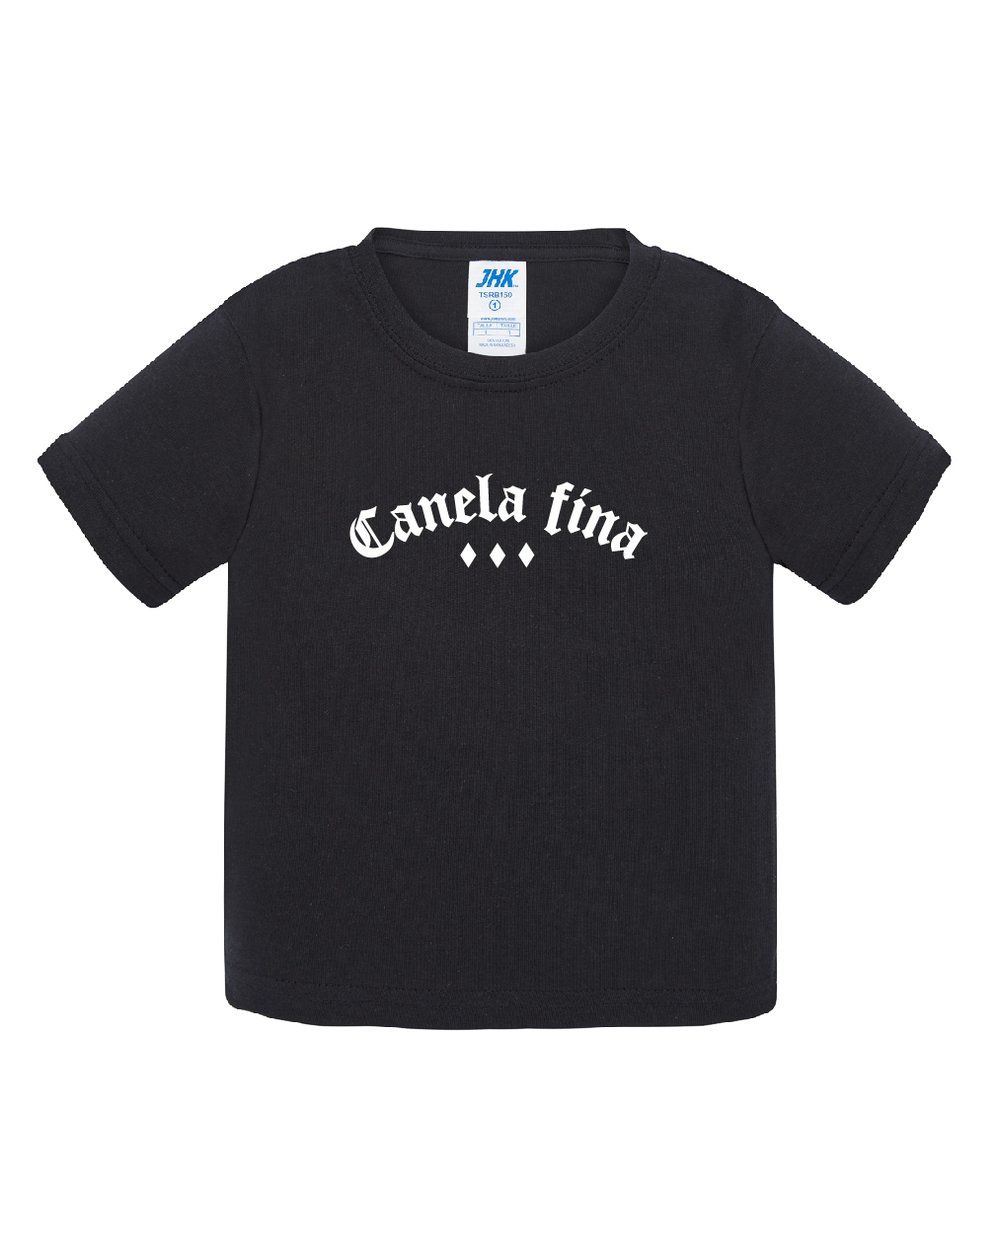 Camiseta Canelita Fina